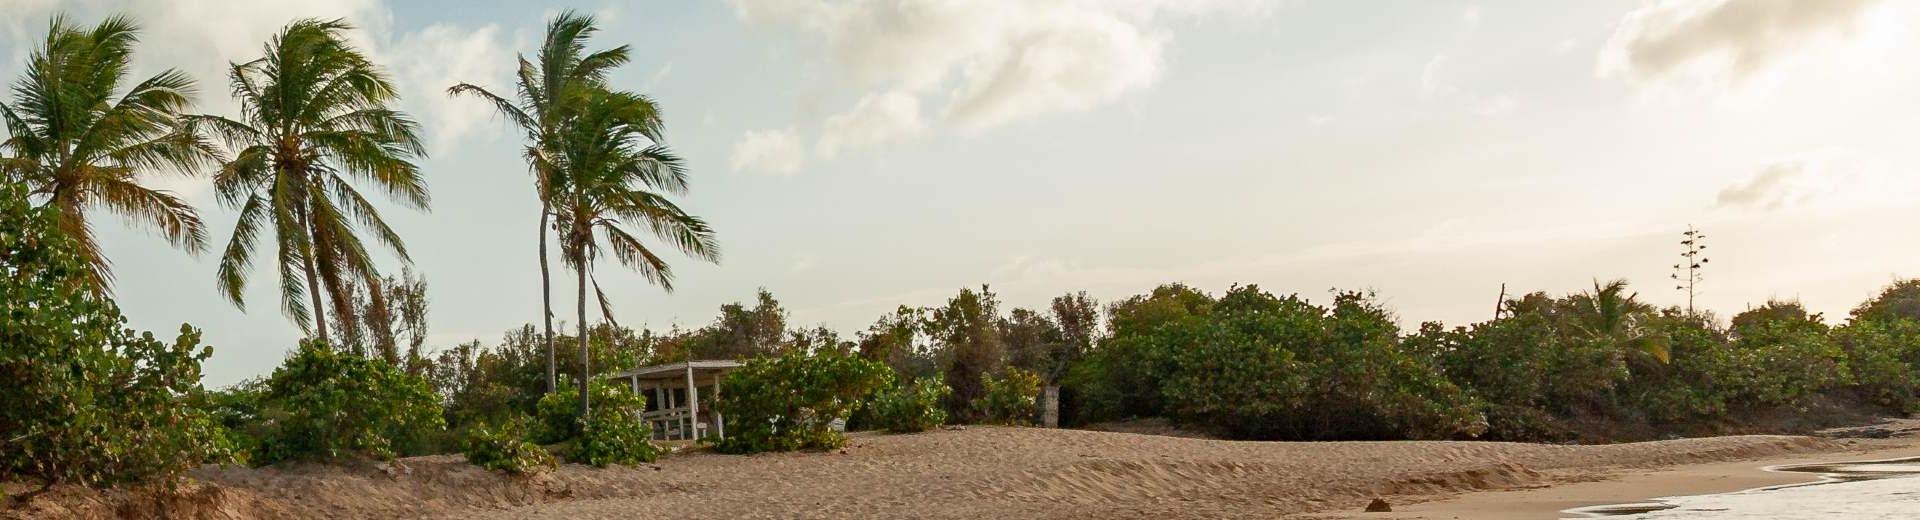 Vakantiehuis Oranjestad - de hoofdstad van Aruba - EuroRelais